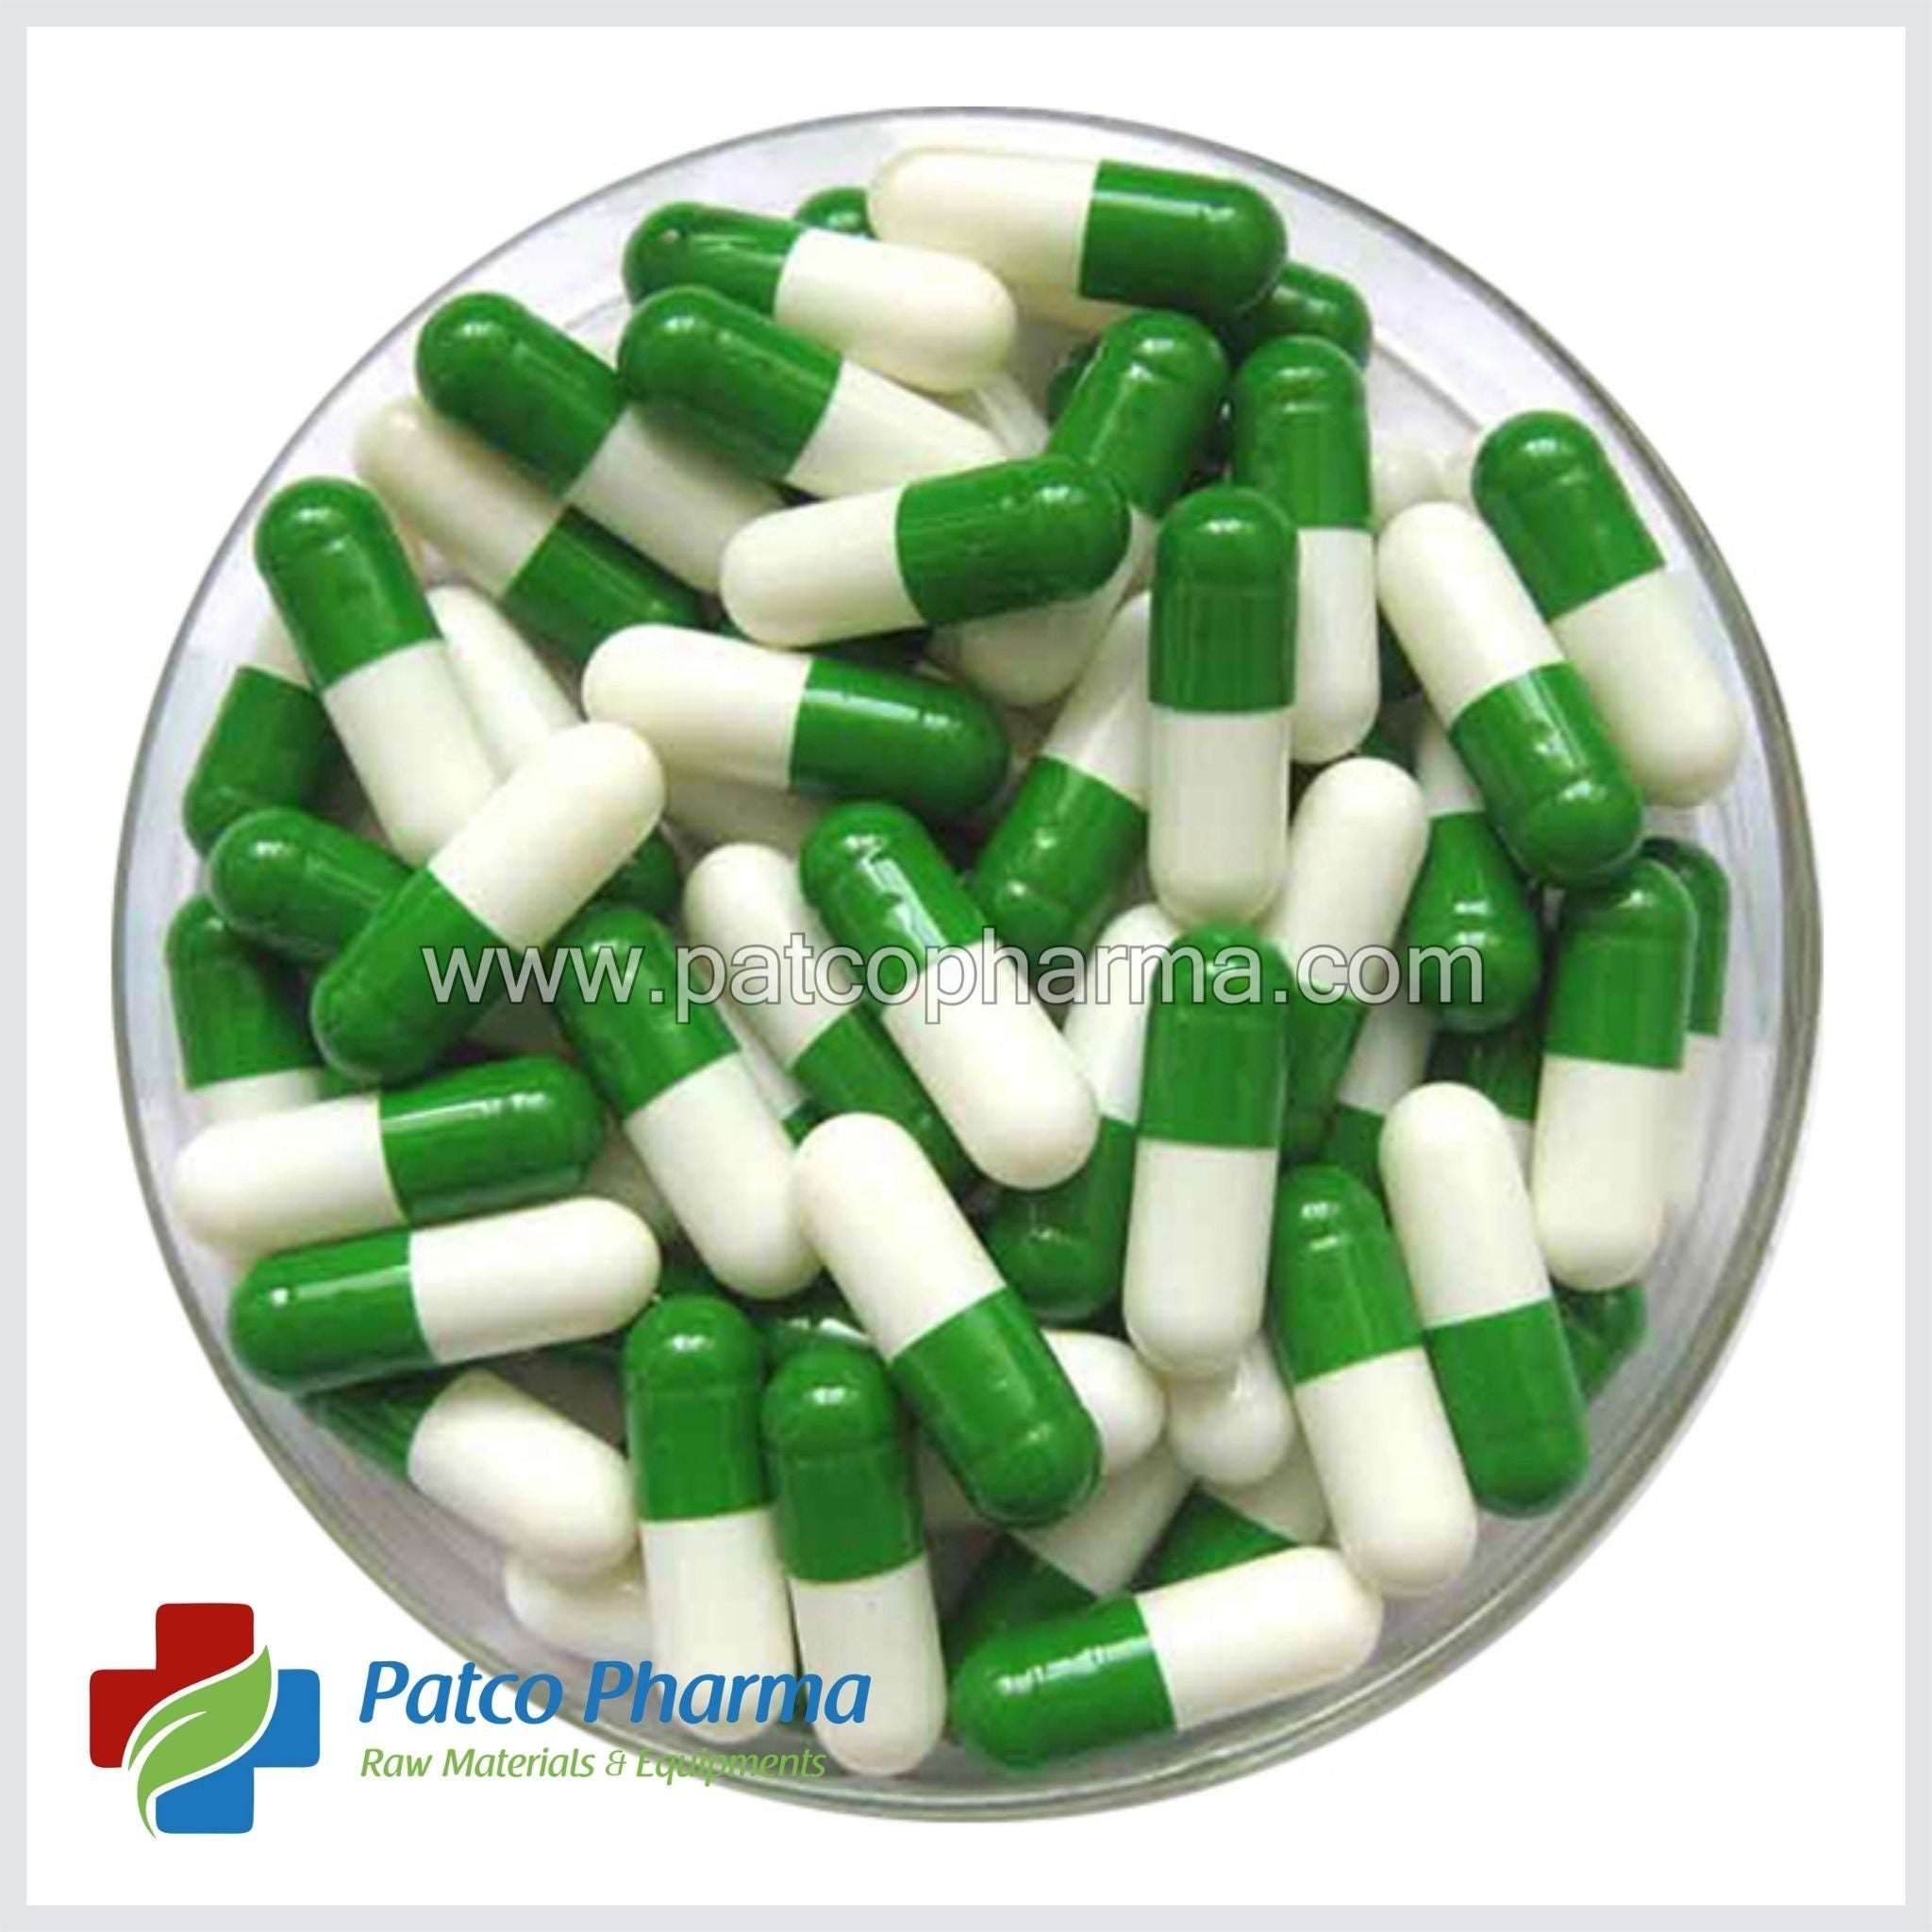 Empty Gelatin Capsule - Size 00, Patco Pharma, Gelatin Capsules, empty-gelatin-capsules-size-00, 1000 mg capsule, Gelatin Capsule, Size 00 Capsule, Patco Pharma